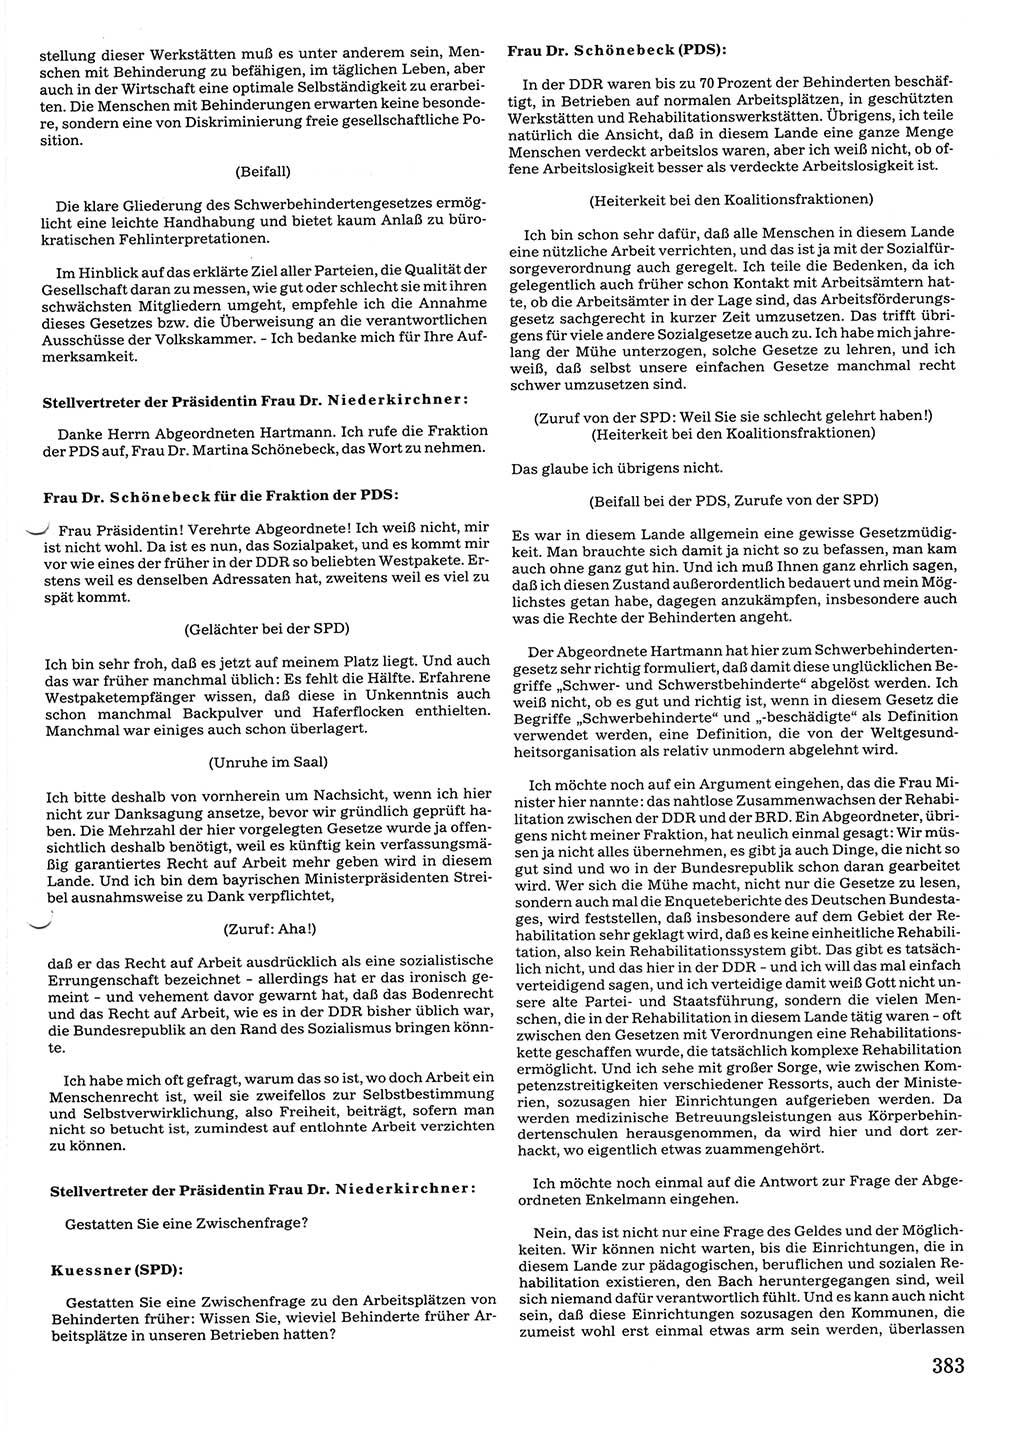 Tagungen der Volkskammer (VK) der Deutschen Demokratischen Republik (DDR), 10. Wahlperiode 1990, Seite 383 (VK. DDR 10. WP. 1990, Prot. Tg. 1-38, 5.4.-2.10.1990, S. 383)